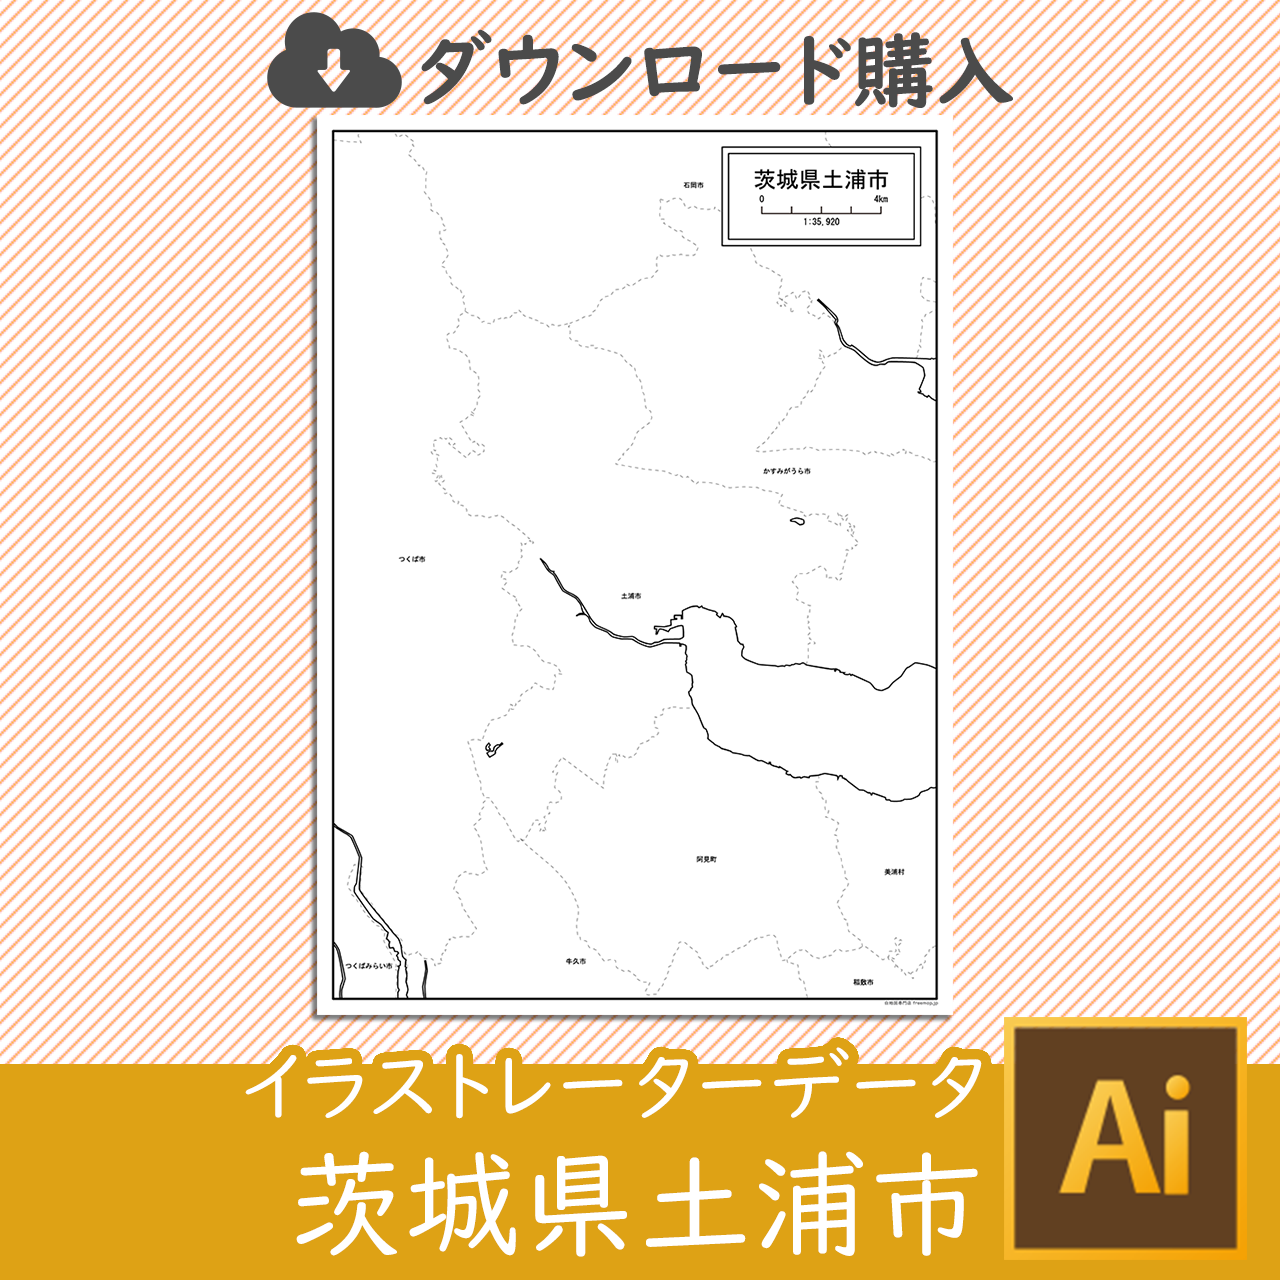 土浦市のaiデータのサムネイル画像